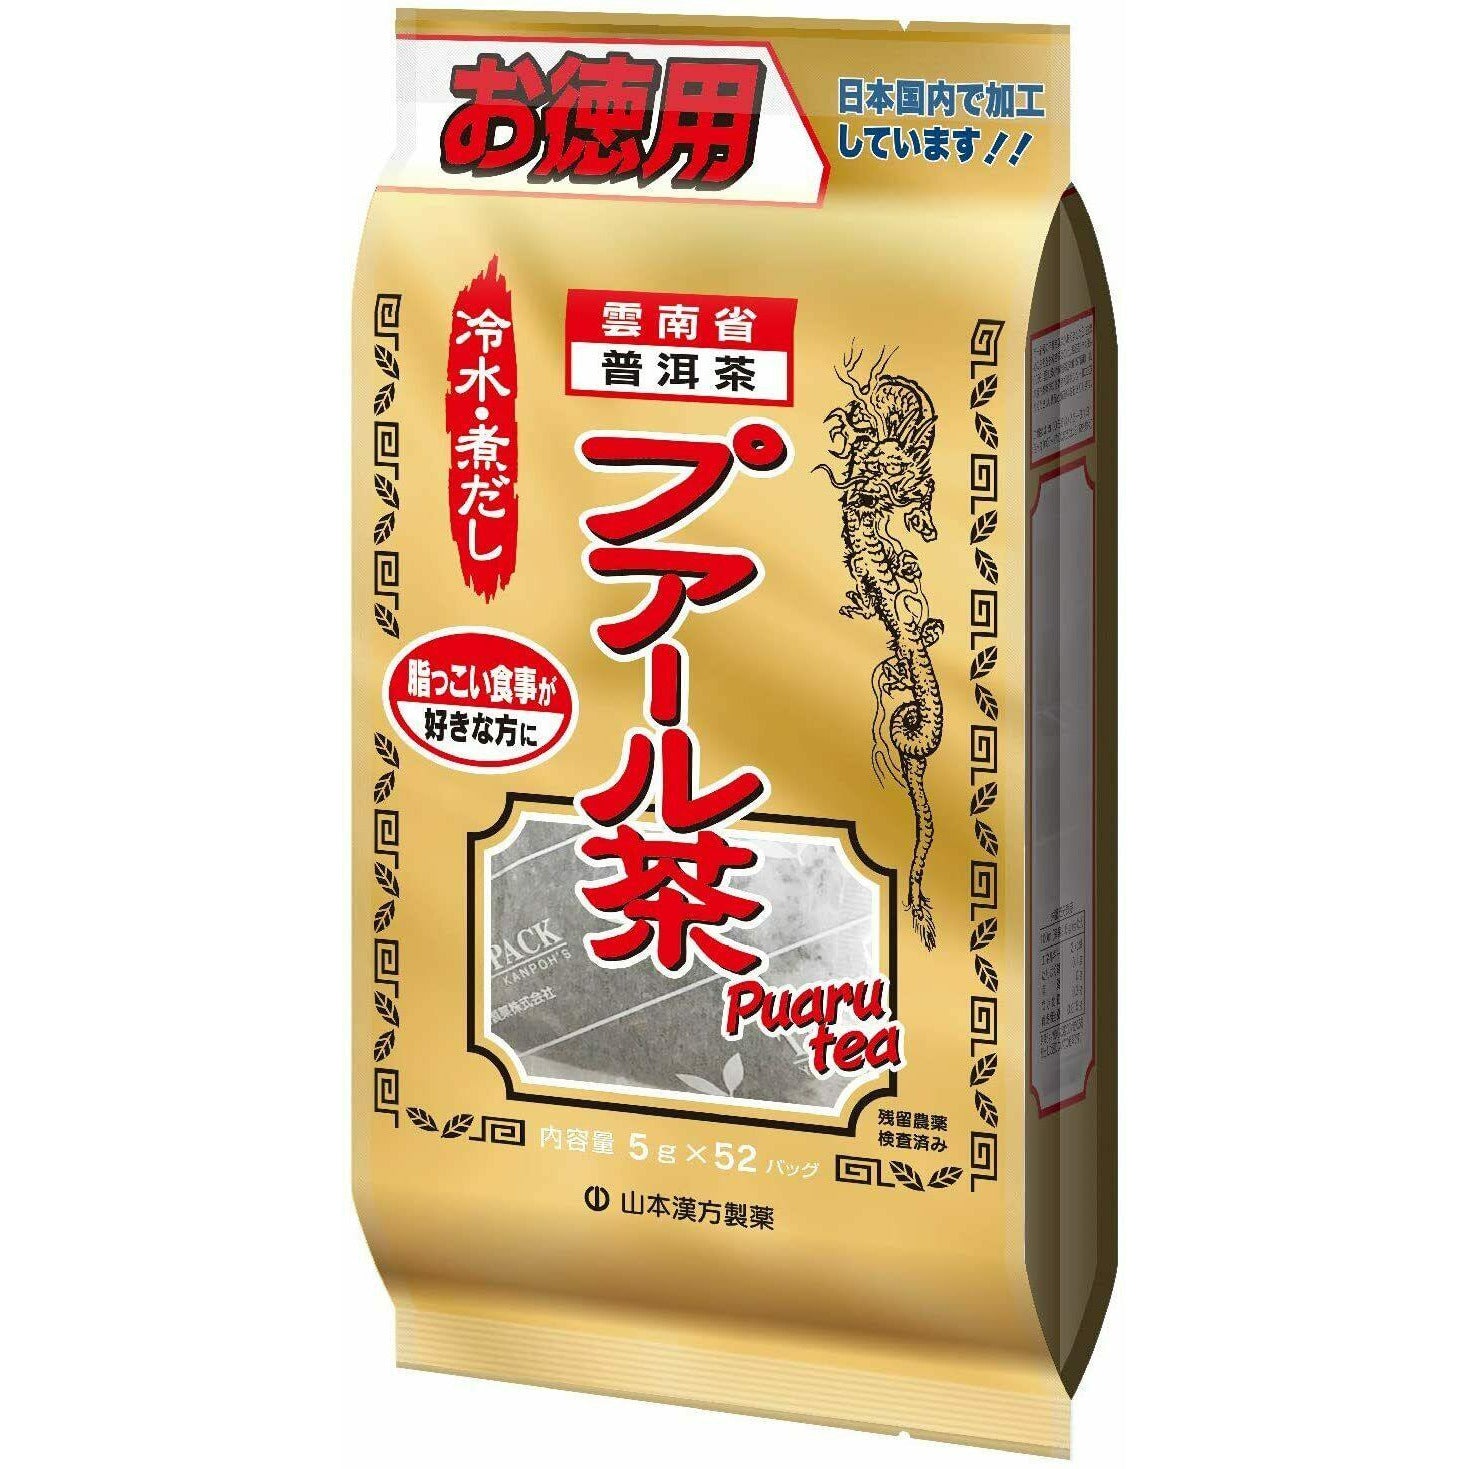  Yamamoto Kanpo Puaru tea 100% Value 5g x 52 packets 